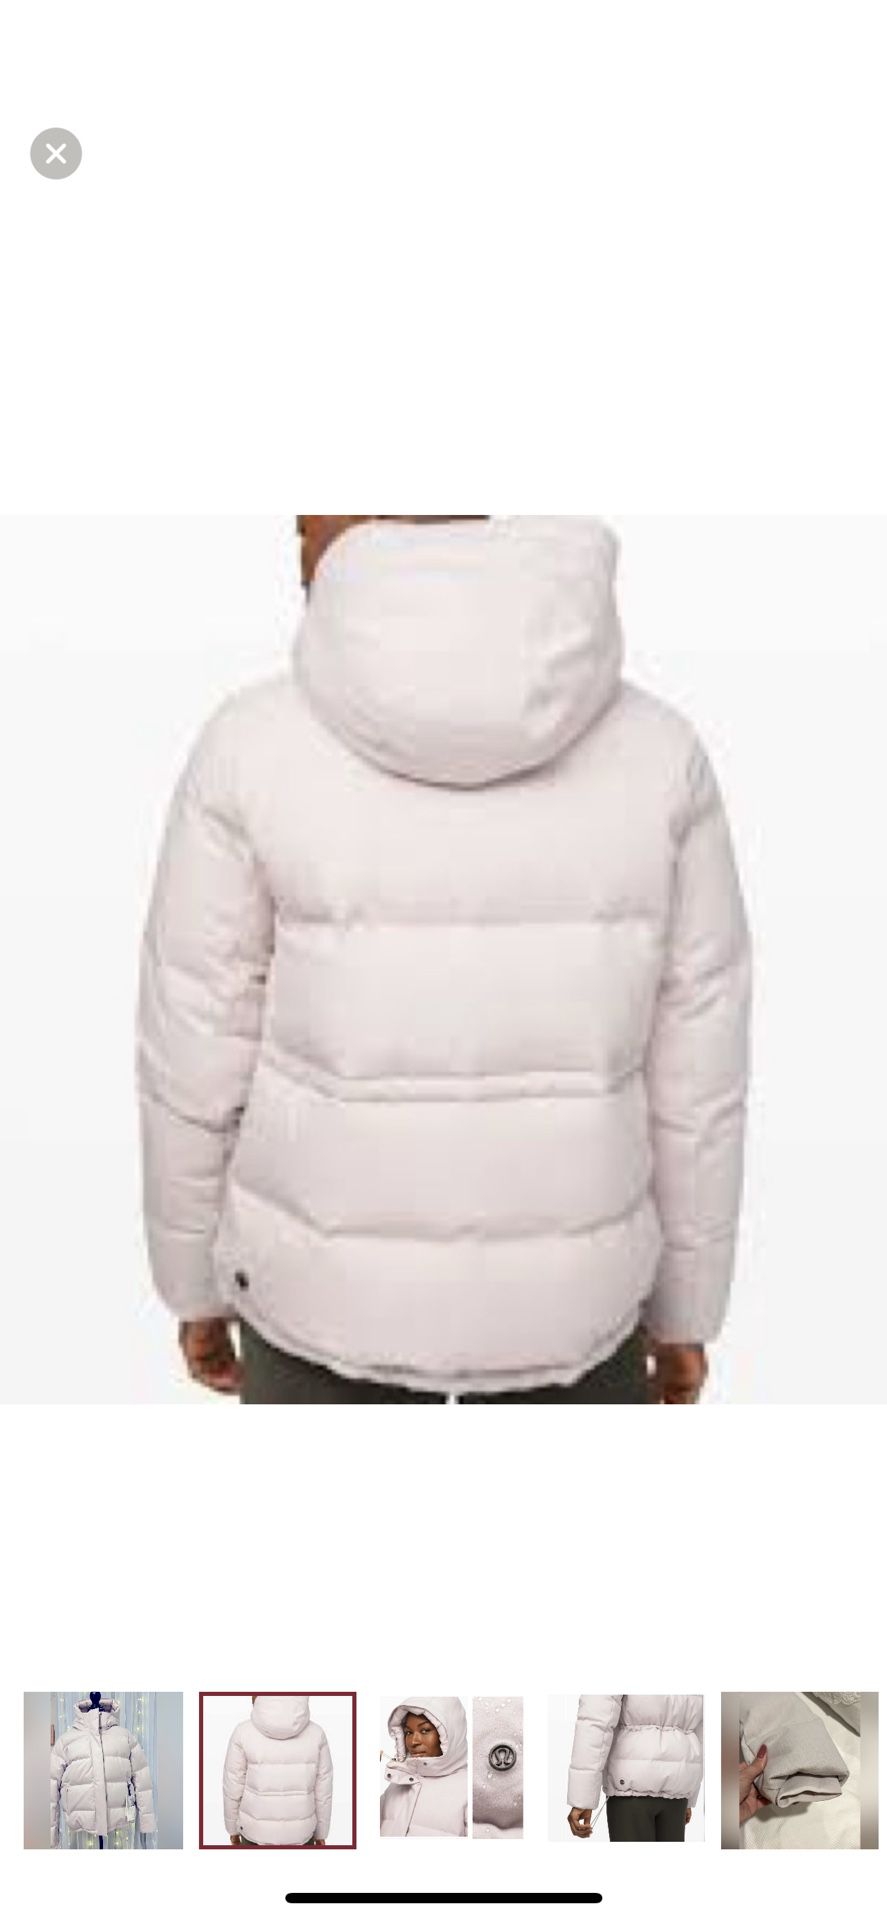 NWT Lululemon Wunder Puff Jacket *Wool Heathered Light Chrome Size 8